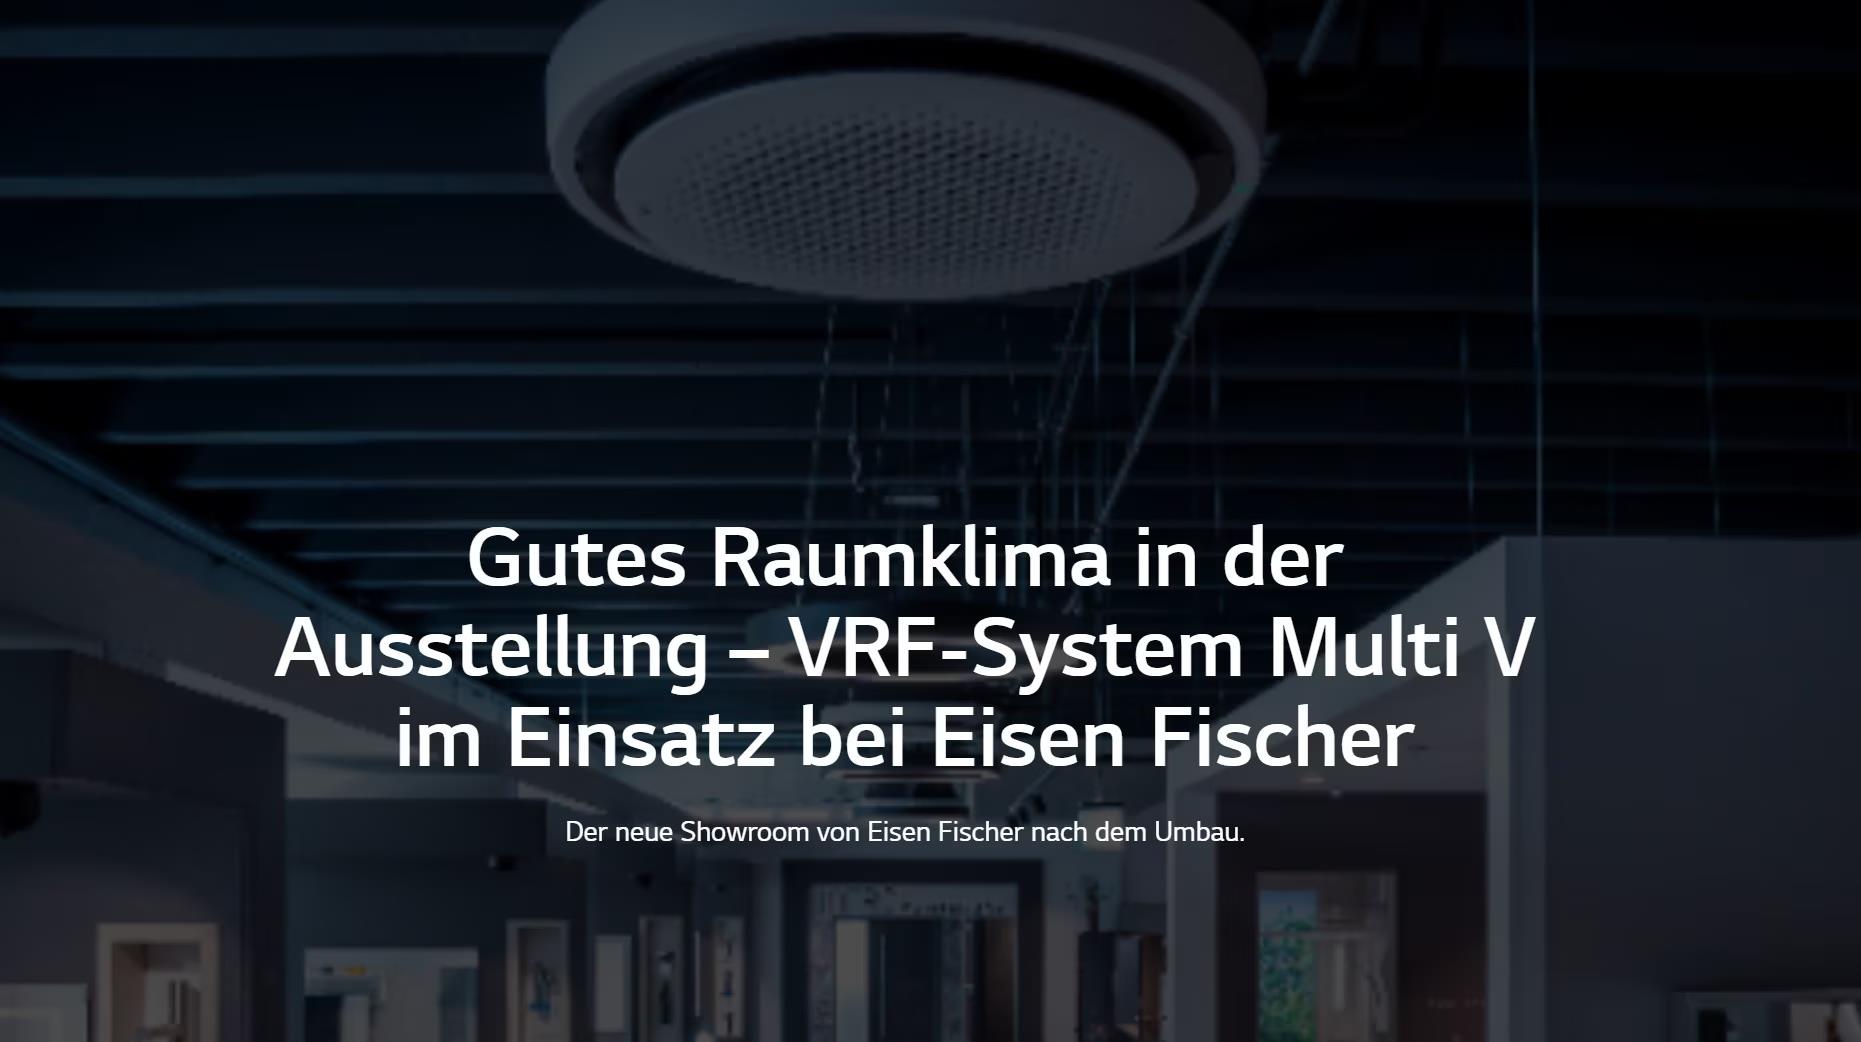 Gutes Raumklima in der Ausstellung – VRF-System Multi V im Einsatz bei Eisen Fischer